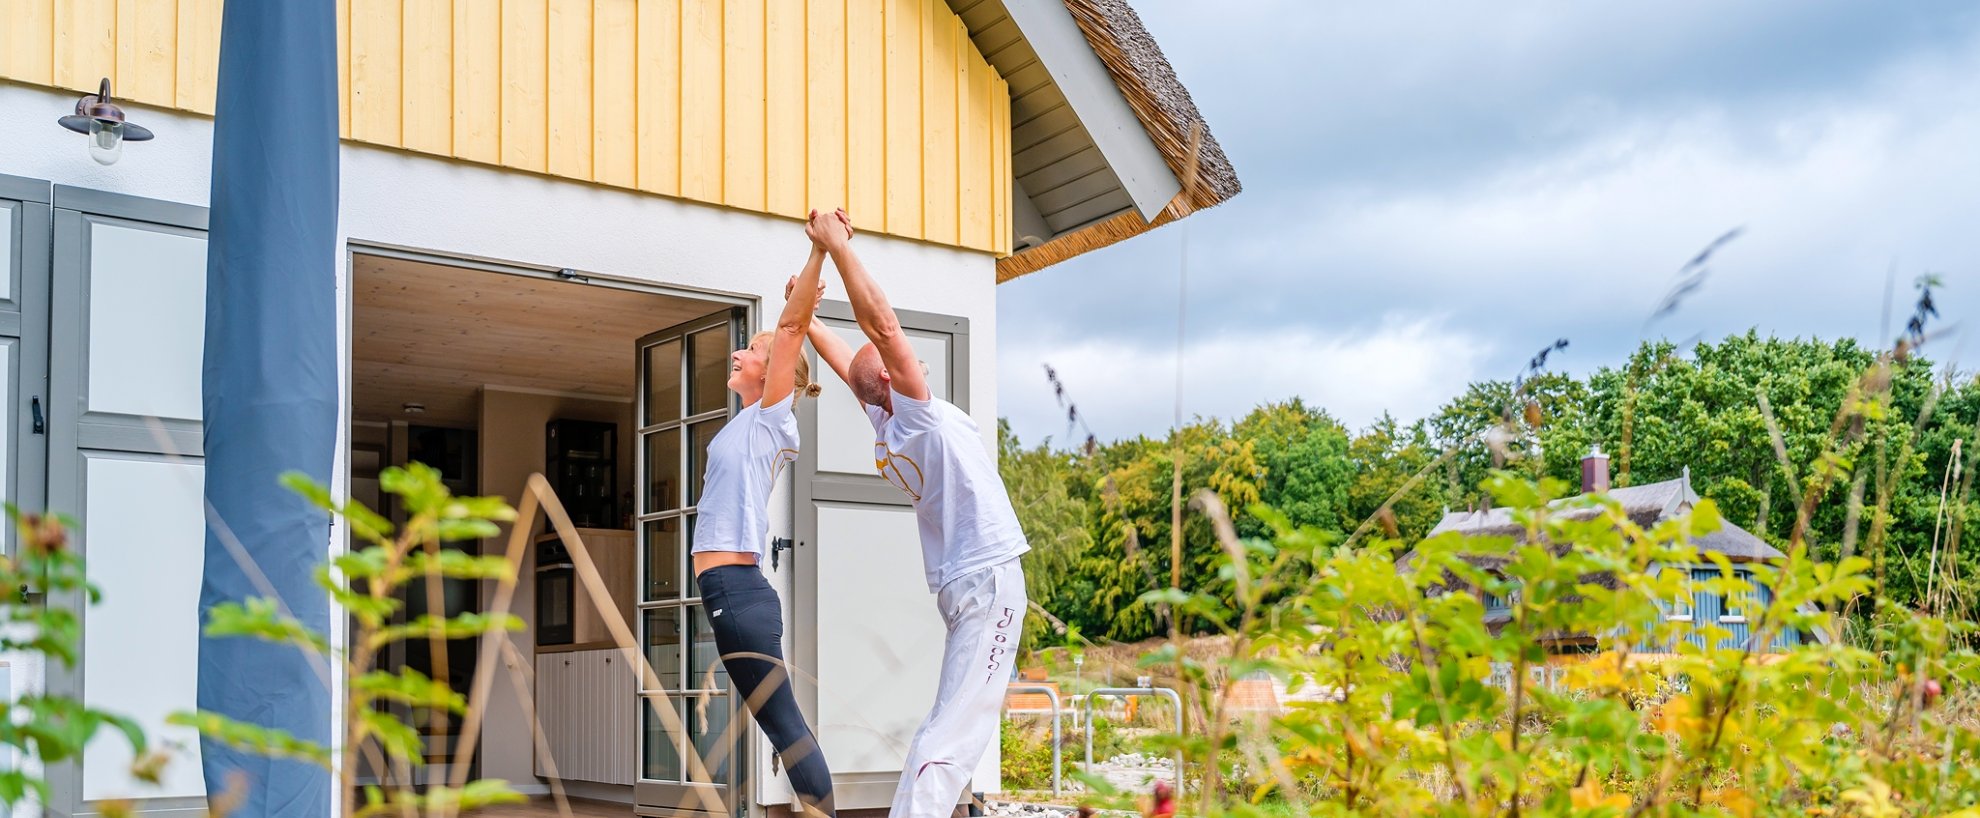 yoga urlaub reisen deutschland ostsee ruegen yogamar resort klein stresow terrasse yogapraxis